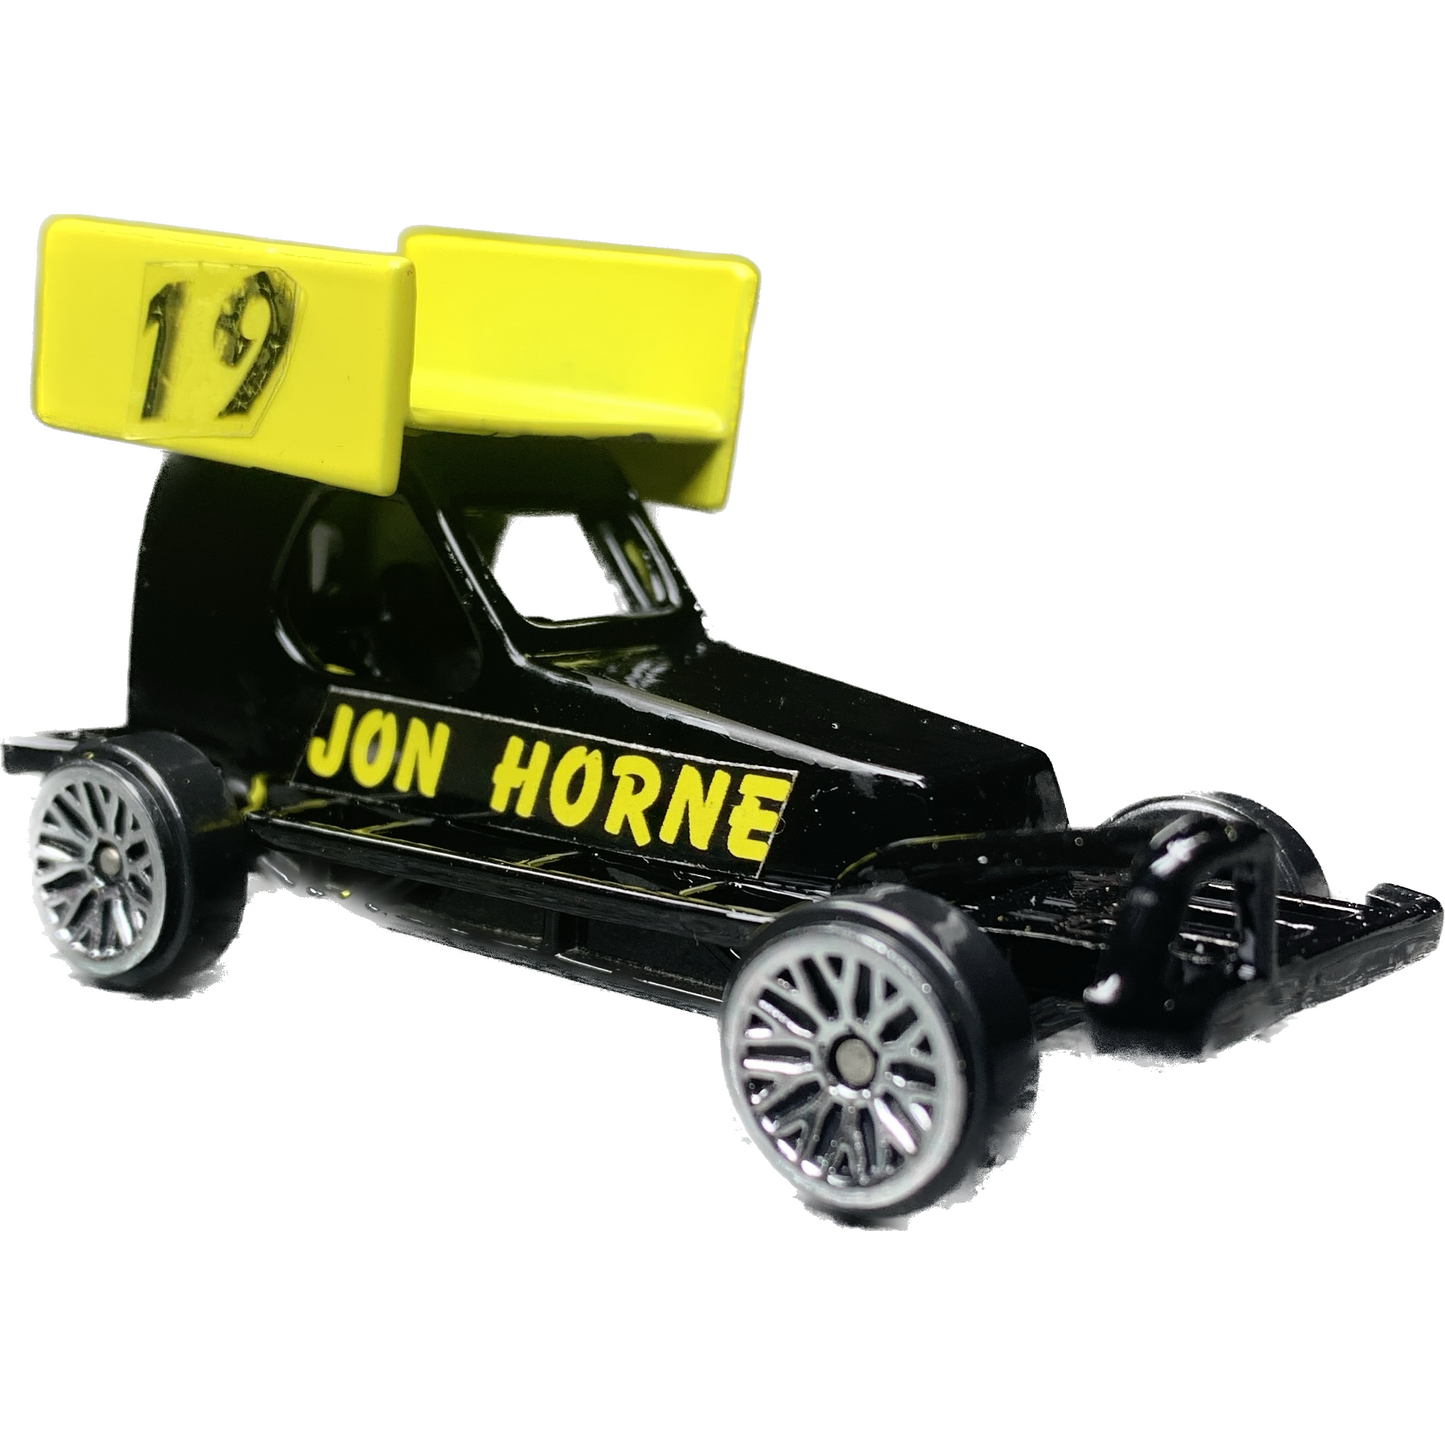 #19 Jon Horne